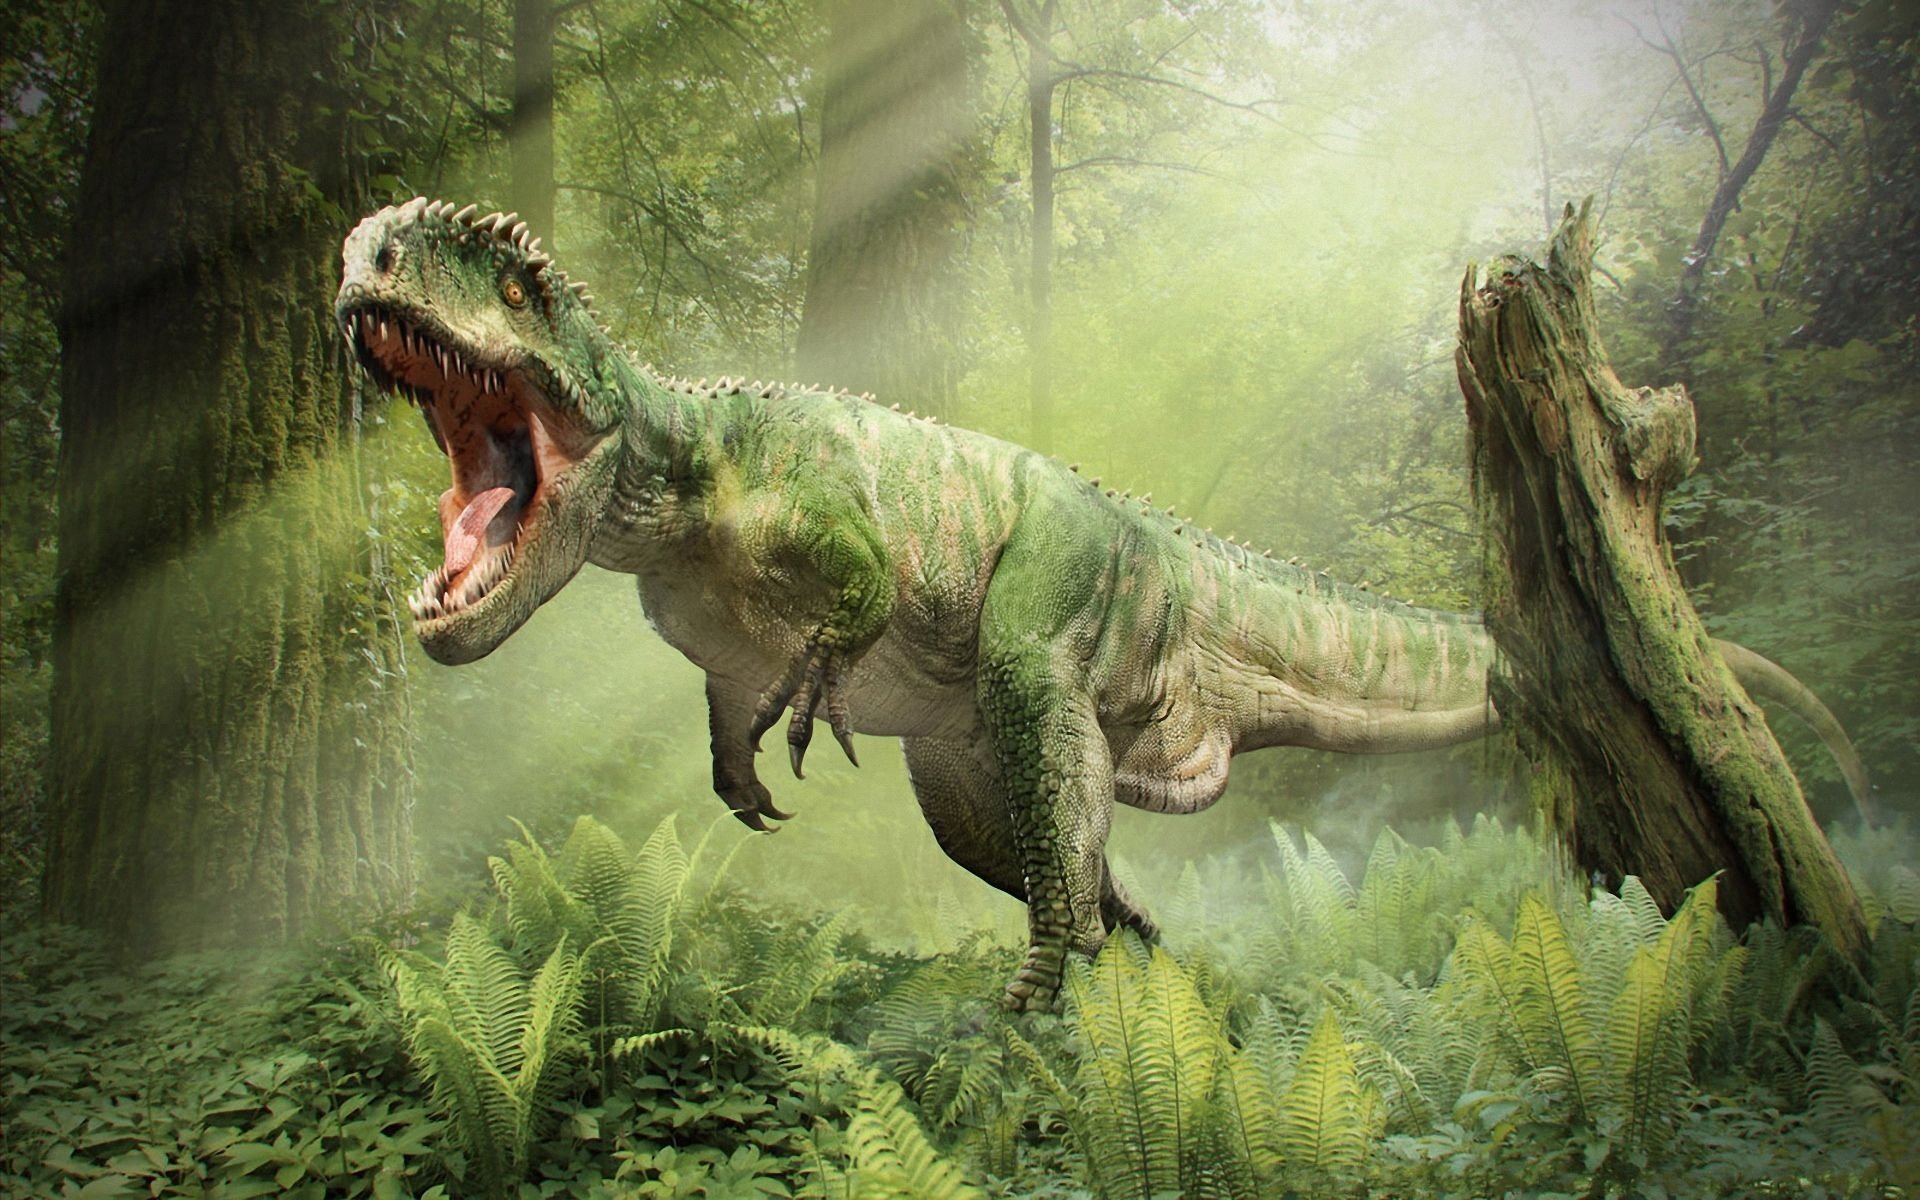 S-a redescoperit un sit unic al dinozaurilor în regiunea Transilvaniei